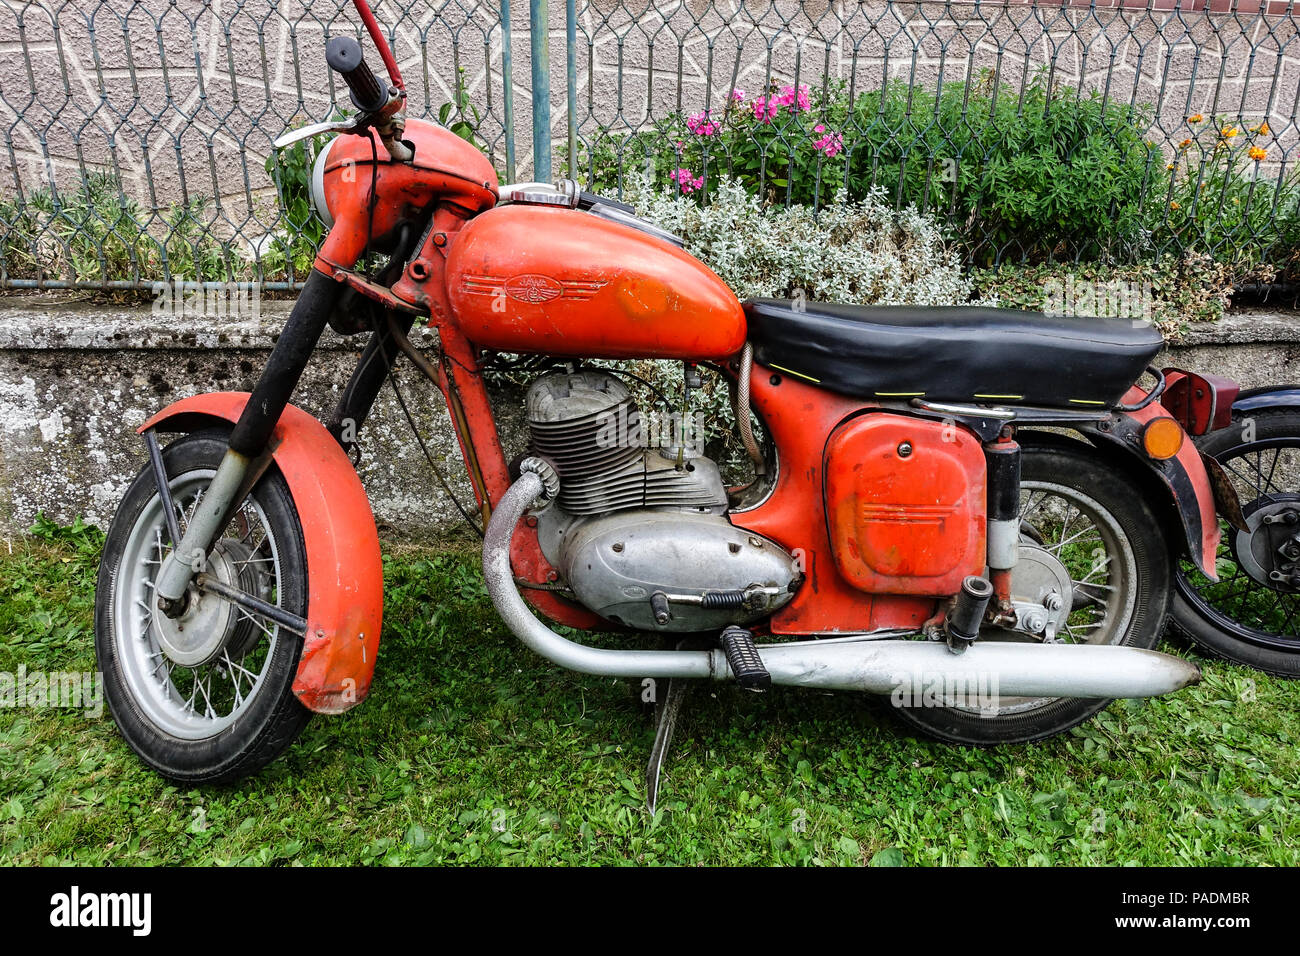 Czechoslovak product, motorcycle brand Jawa 250, Czech Republic Stock Photo  - Alamy